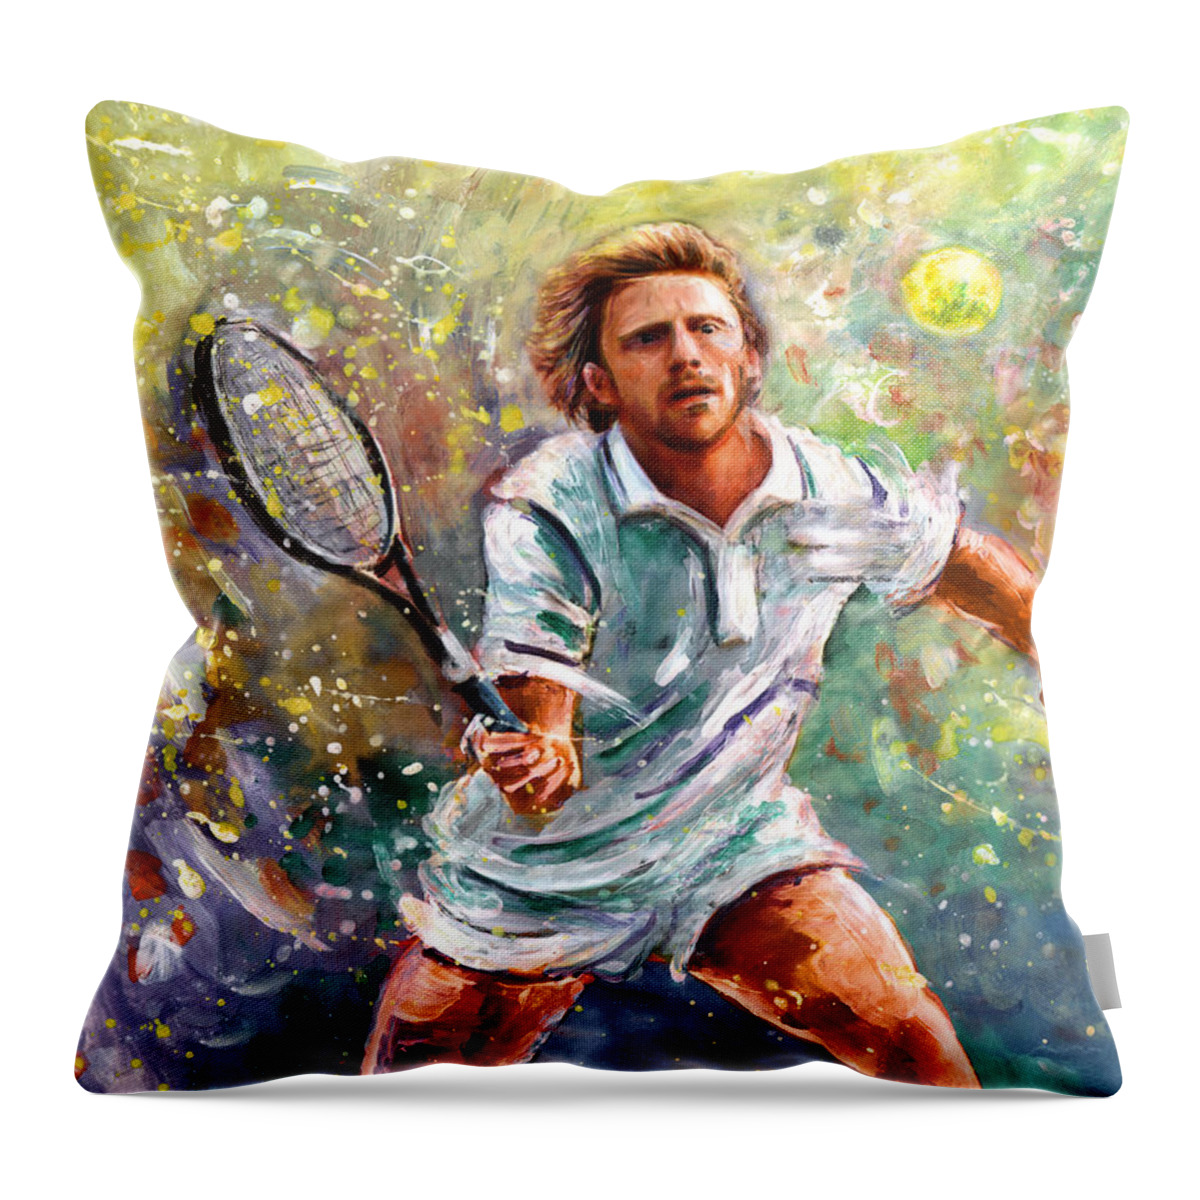 Sport Throw Pillow featuring the painting Boris Becker by Miki De Goodaboom